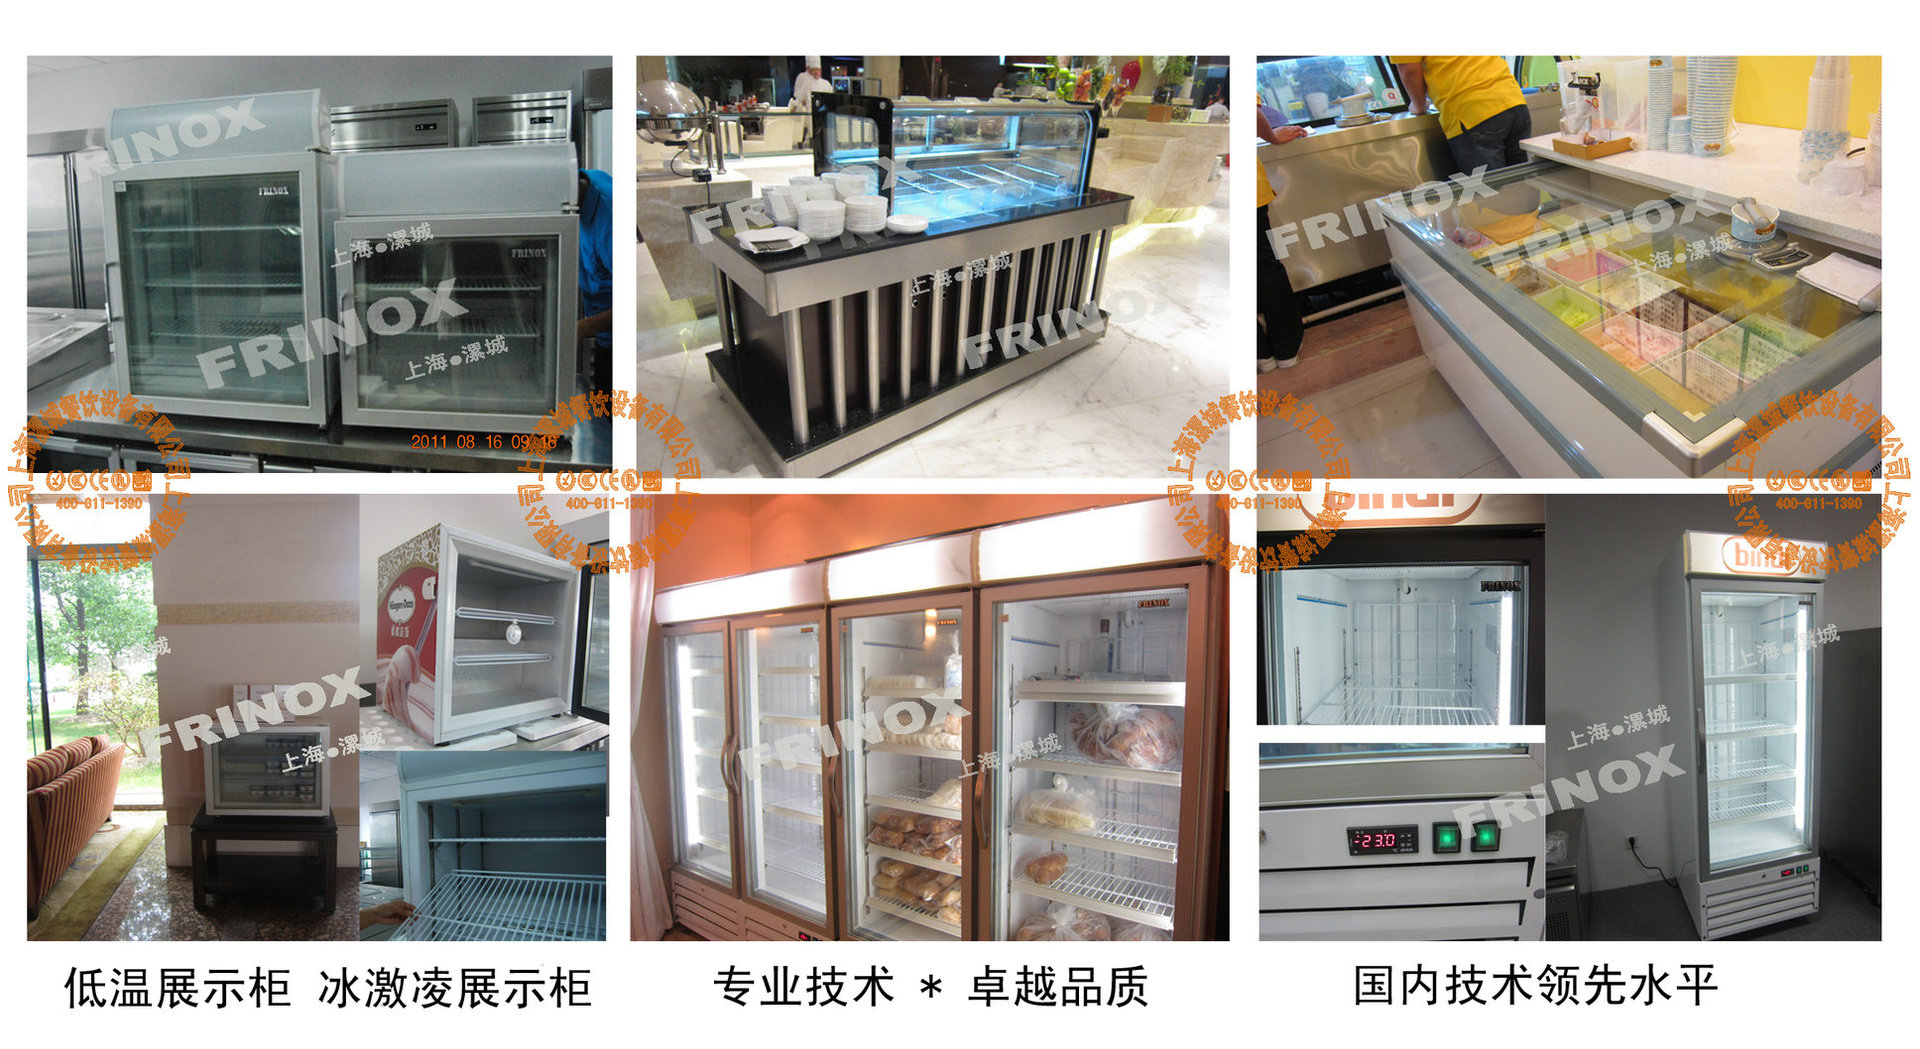 现货热销S160T FRINOX寿司冷藏柜 商用小型冷藏柜